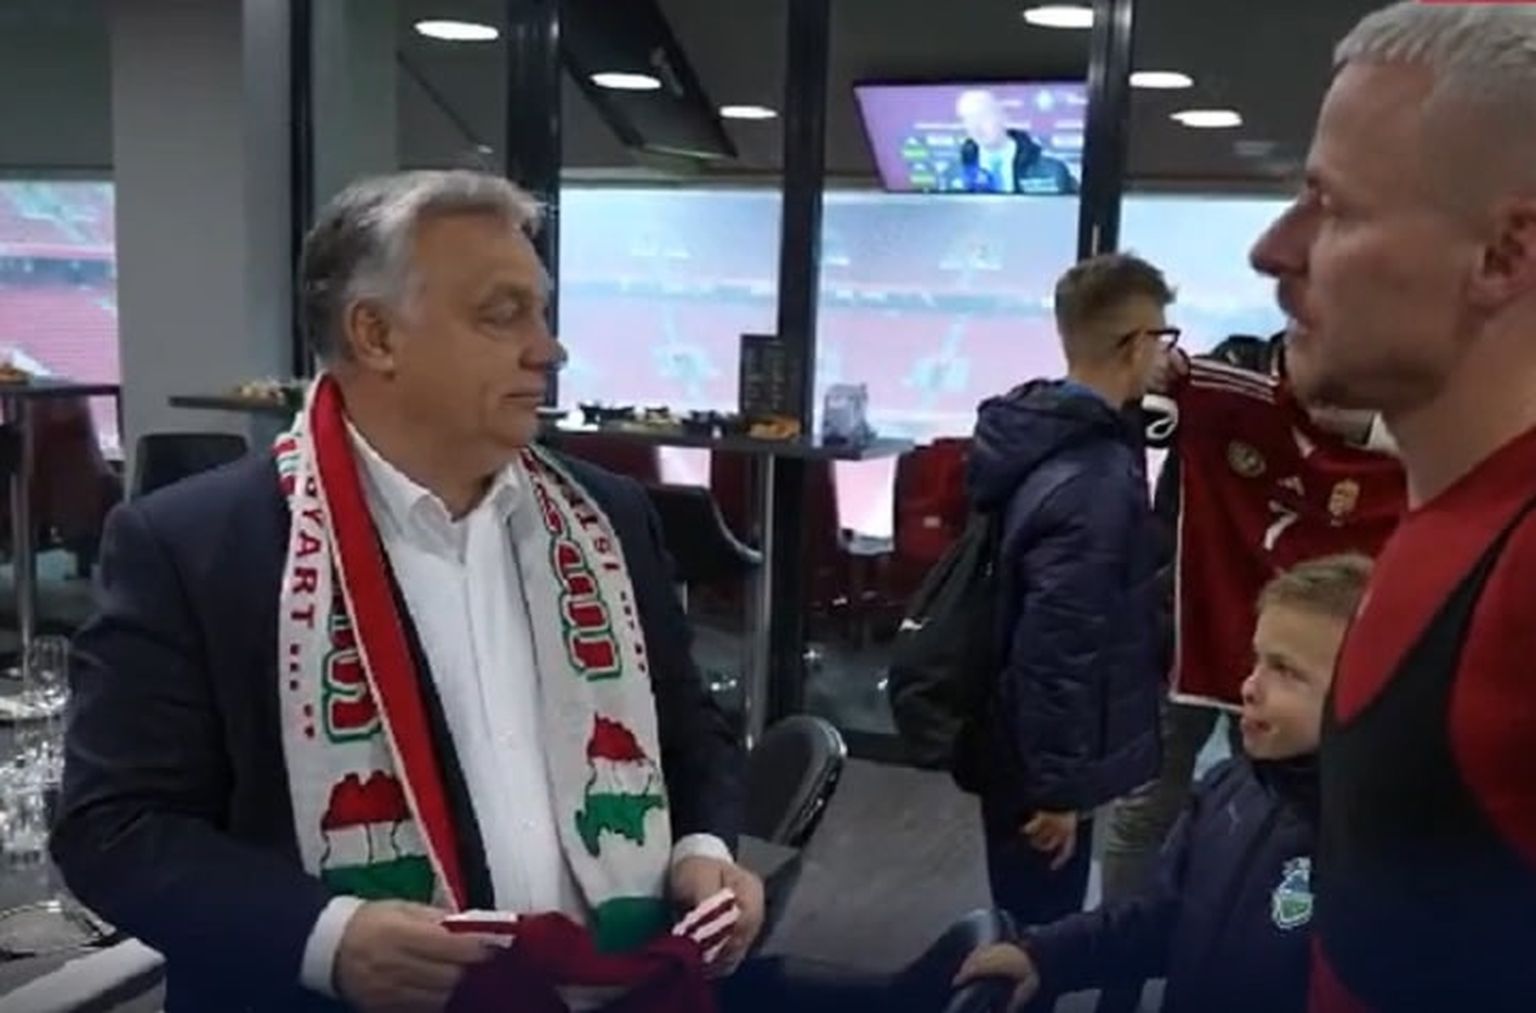 Виктор Орбан появился на публике в фанатском шарфе с изображением «Великой Венгрии».